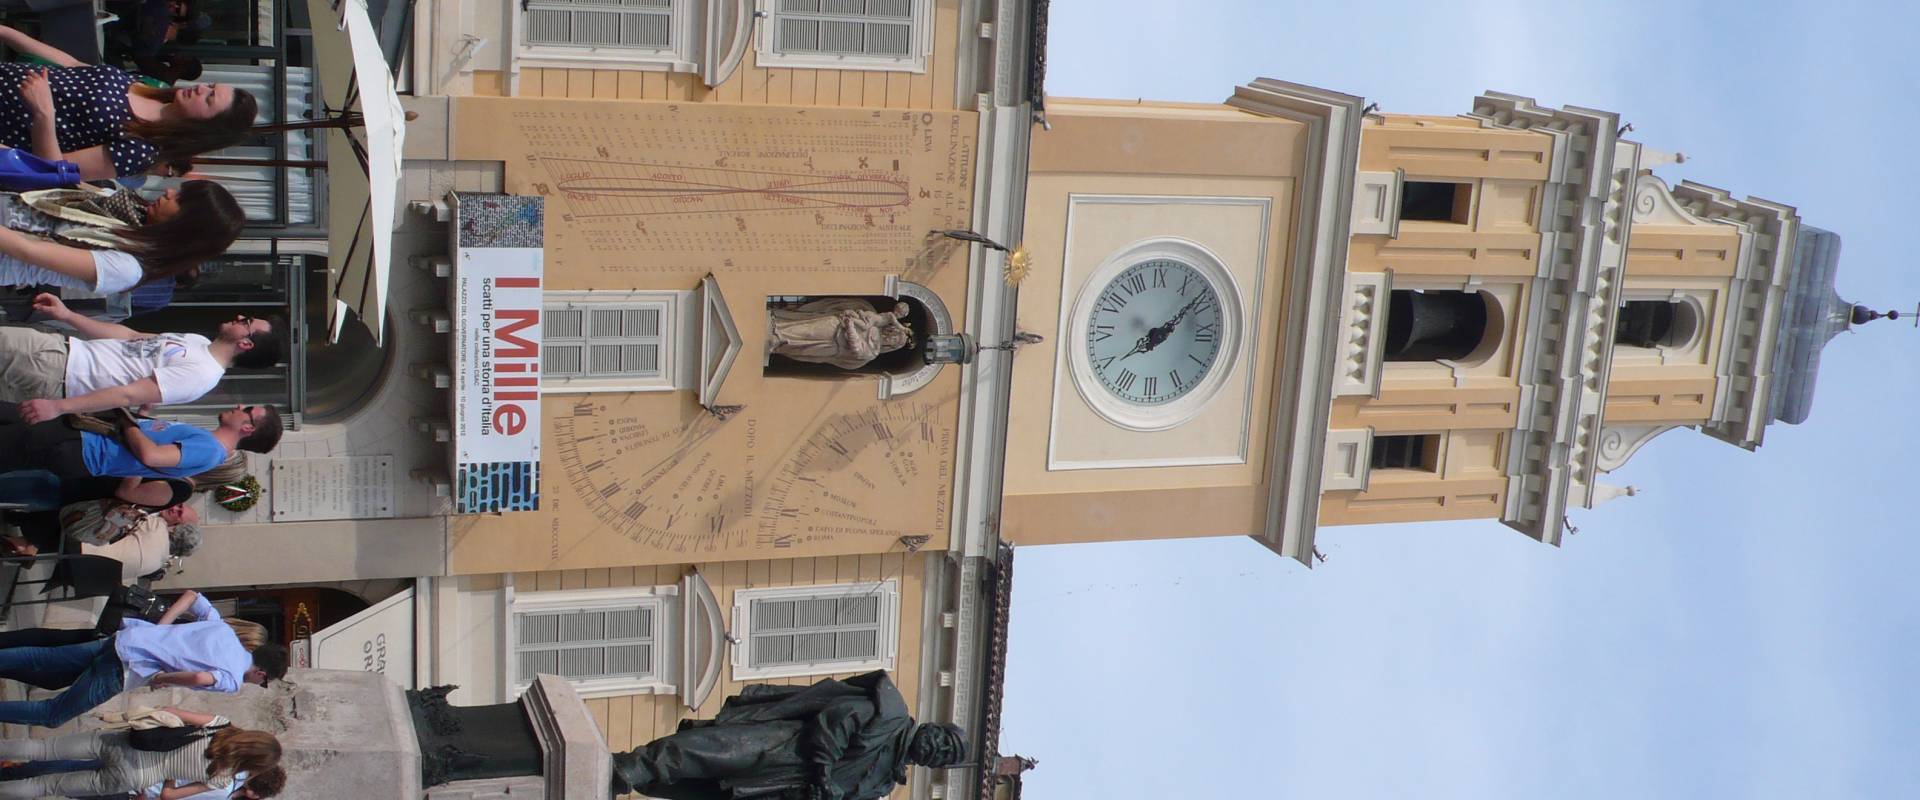 Palazzo del Governatore 1 - Parma foto di RatMan1234